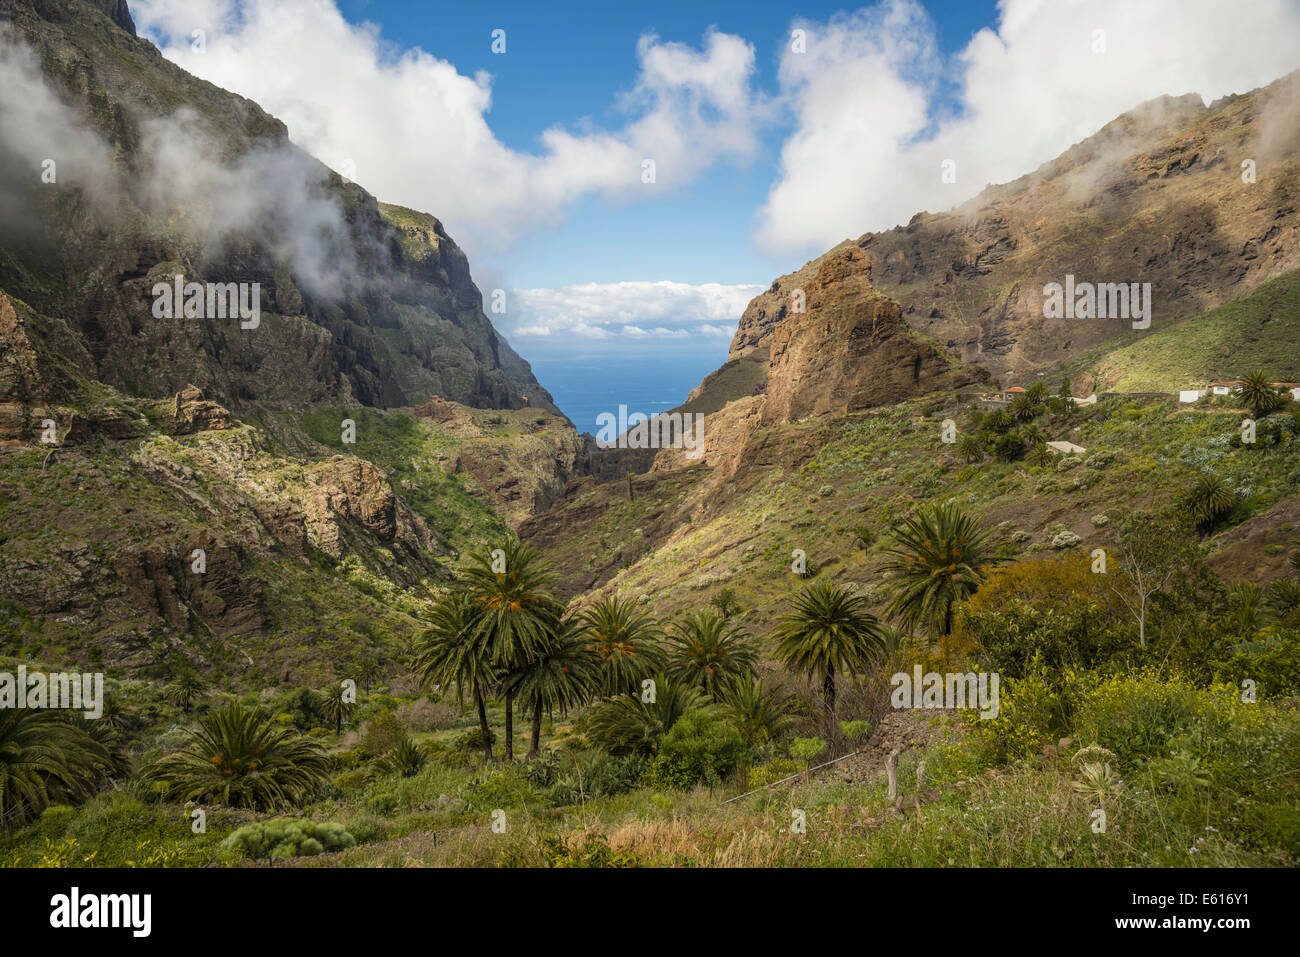 Le formazioni rocciose, rocce vulcaniche, Masca Gorge, Barranco de Masca, Tenerife, Isole Canarie, Spagna Foto Stock